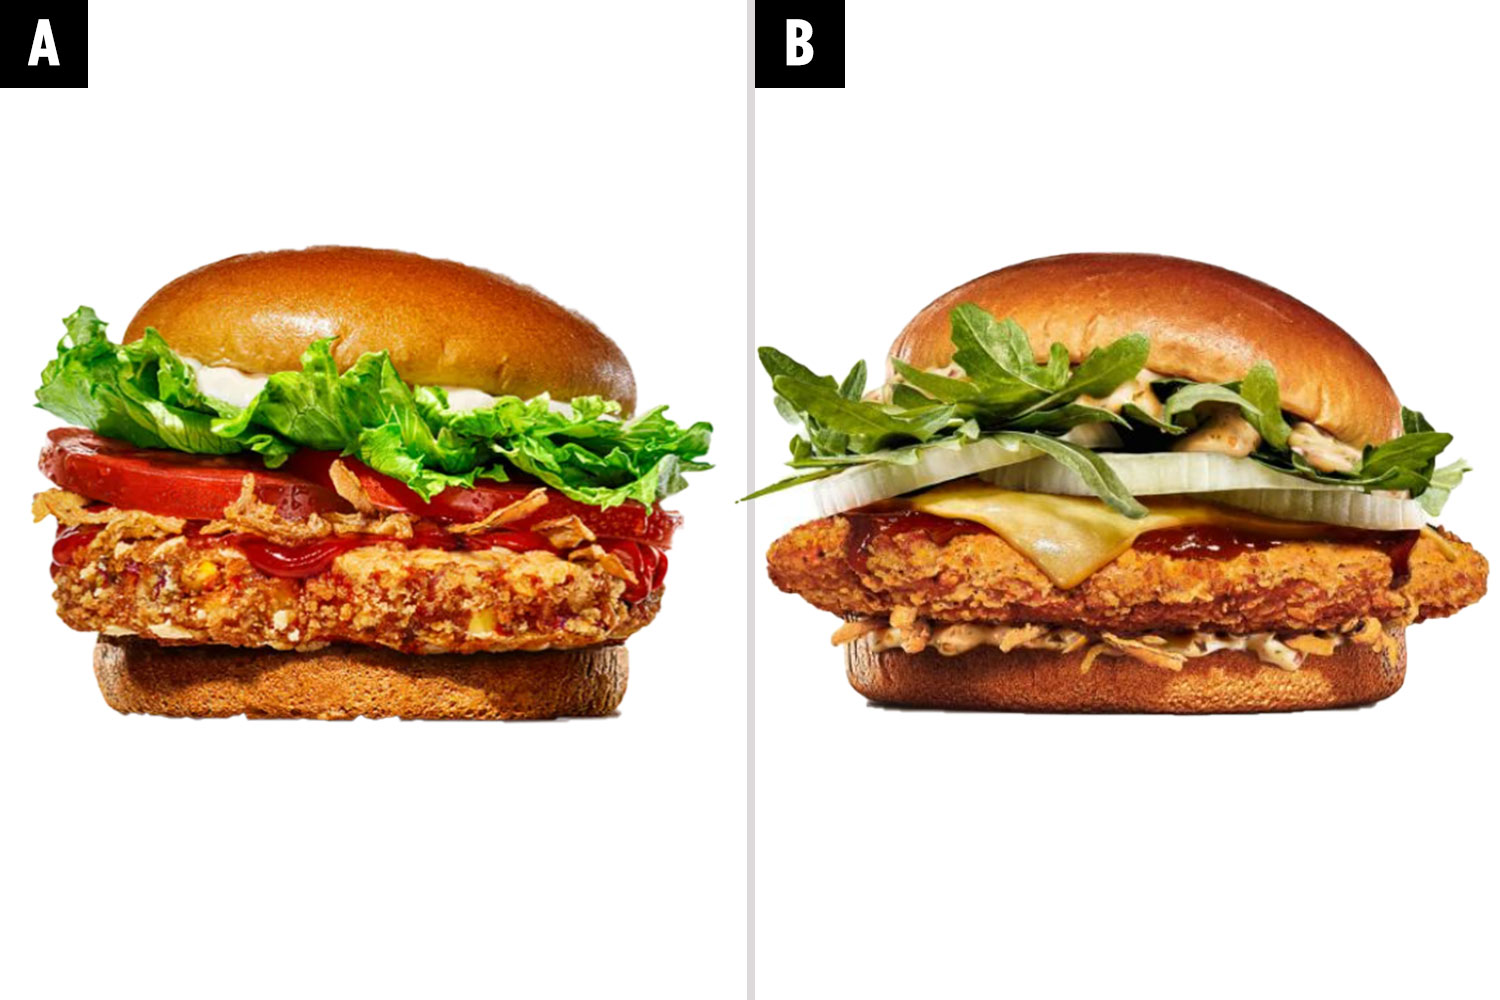 Erkennen Sie den Smoky Chimichurri Chicken Burger von BK als fleischfreie Alternative?